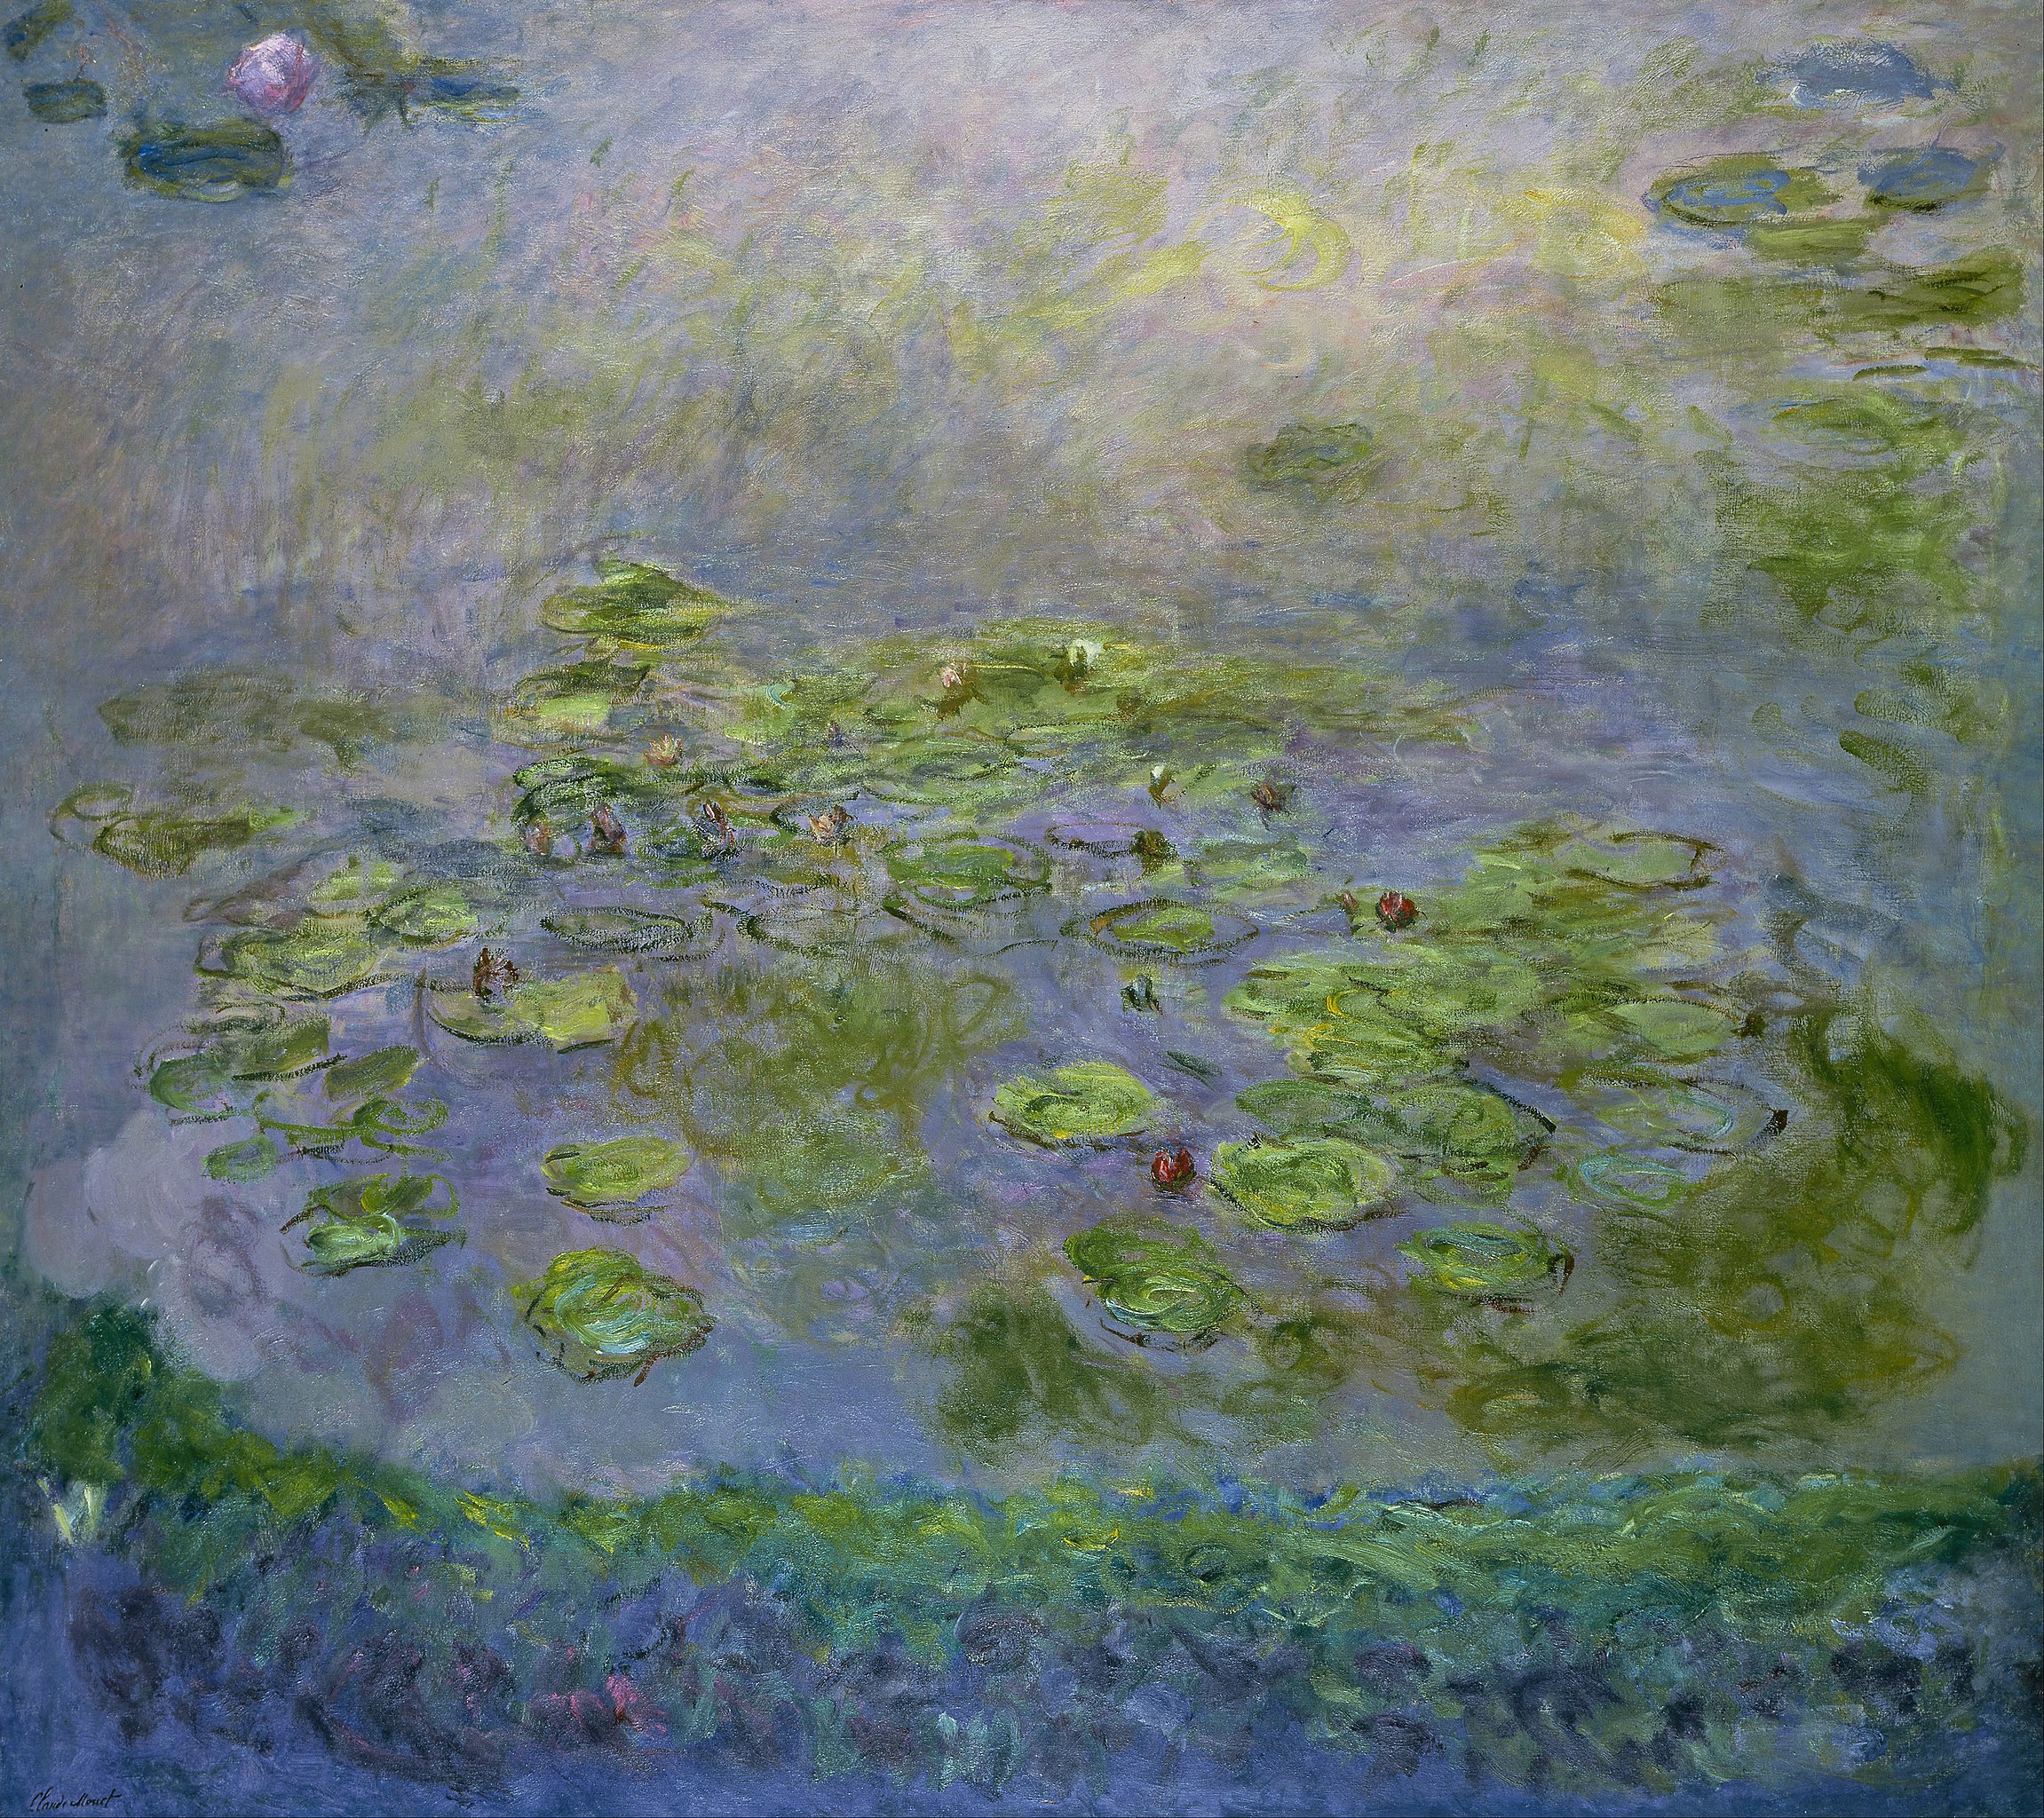 睡蓮 by Claude Monet - 1914-17年左右 - 201.6 x 181 cm 